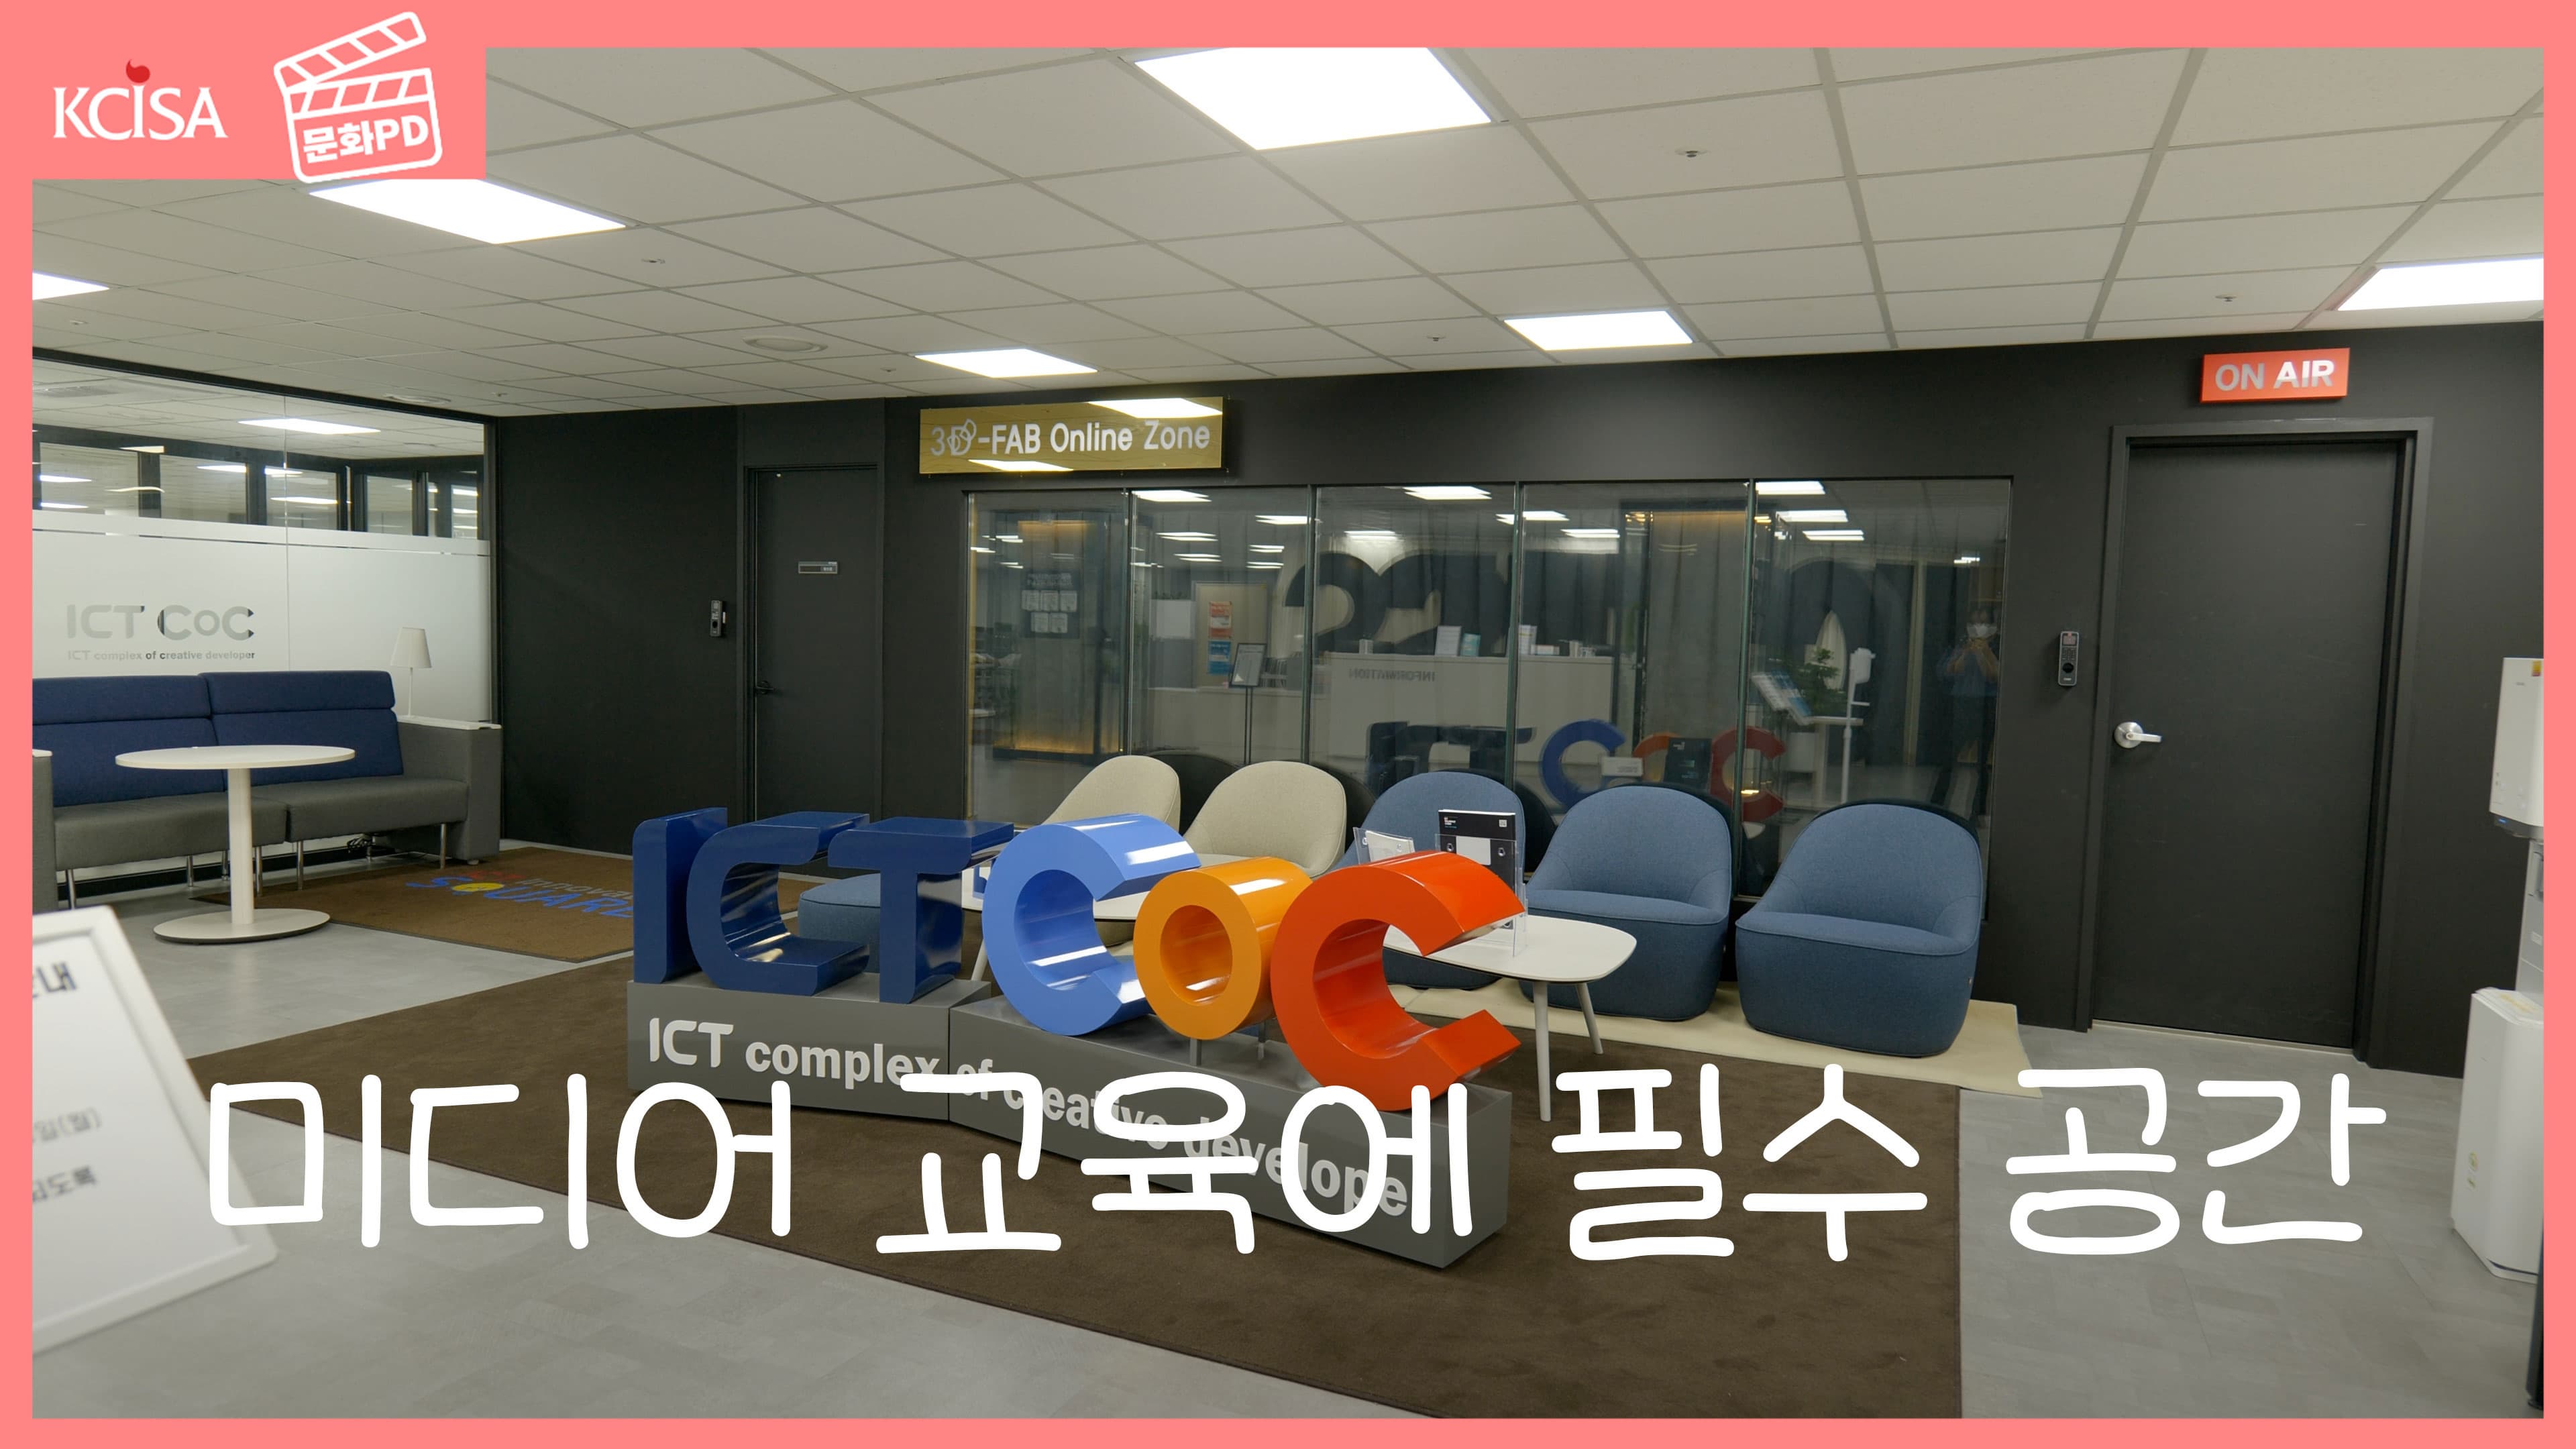 [문화PD] 서울에서 무료로 장소 대관하는 방법 (feat.공덕역 ICT CoC)